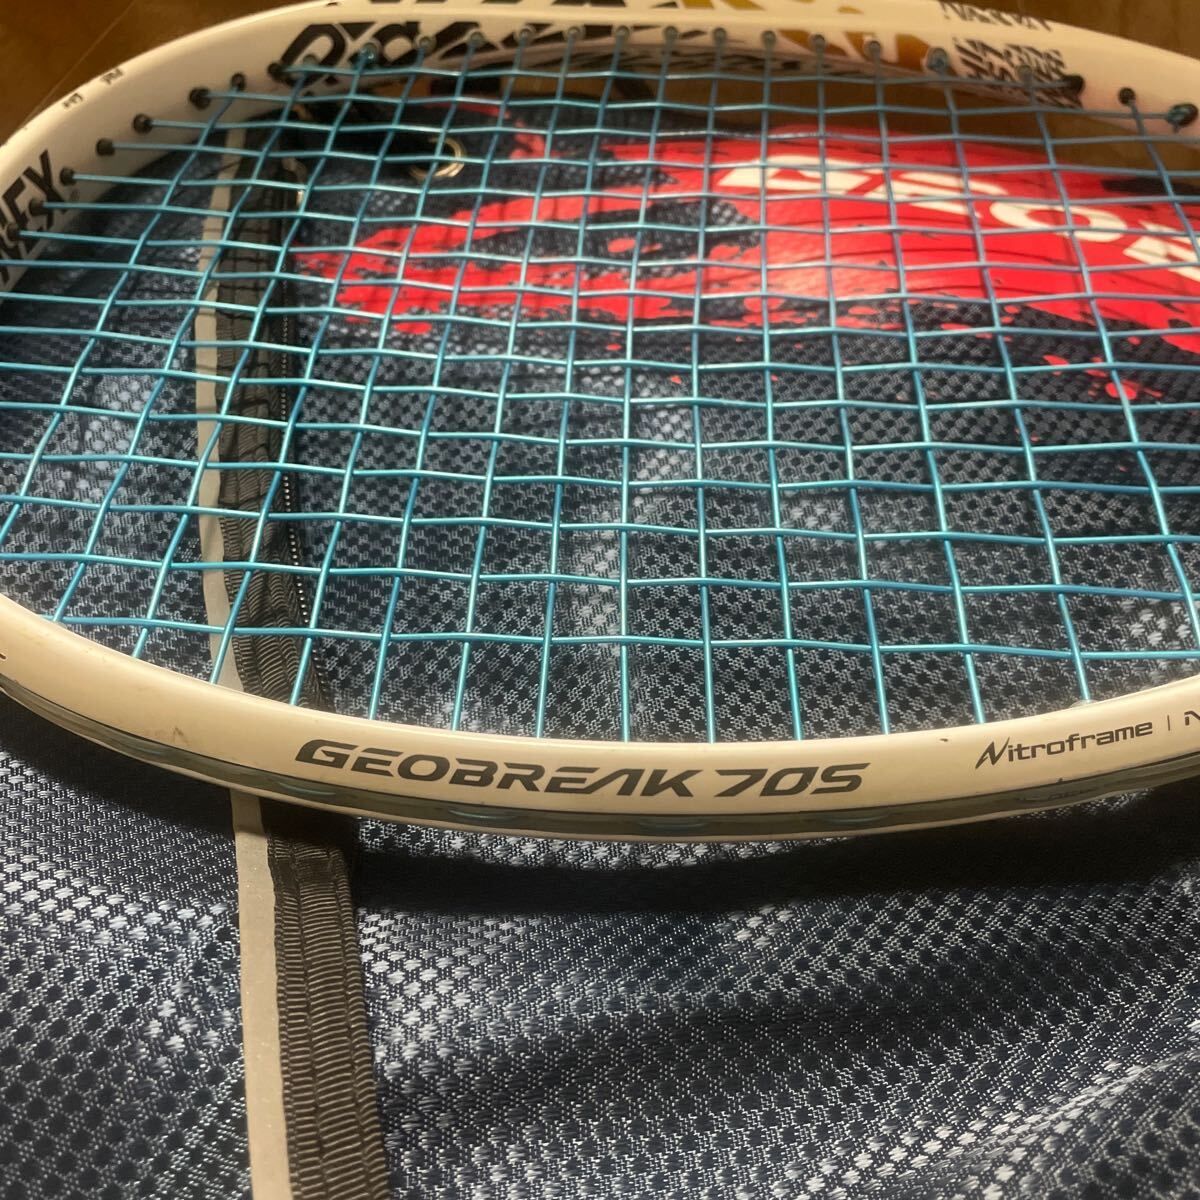 YONEXジオブレイク70sマットホワイト 定価26,400円 1年使用　テニスラケット ヨネックス 軟式テニス_画像9